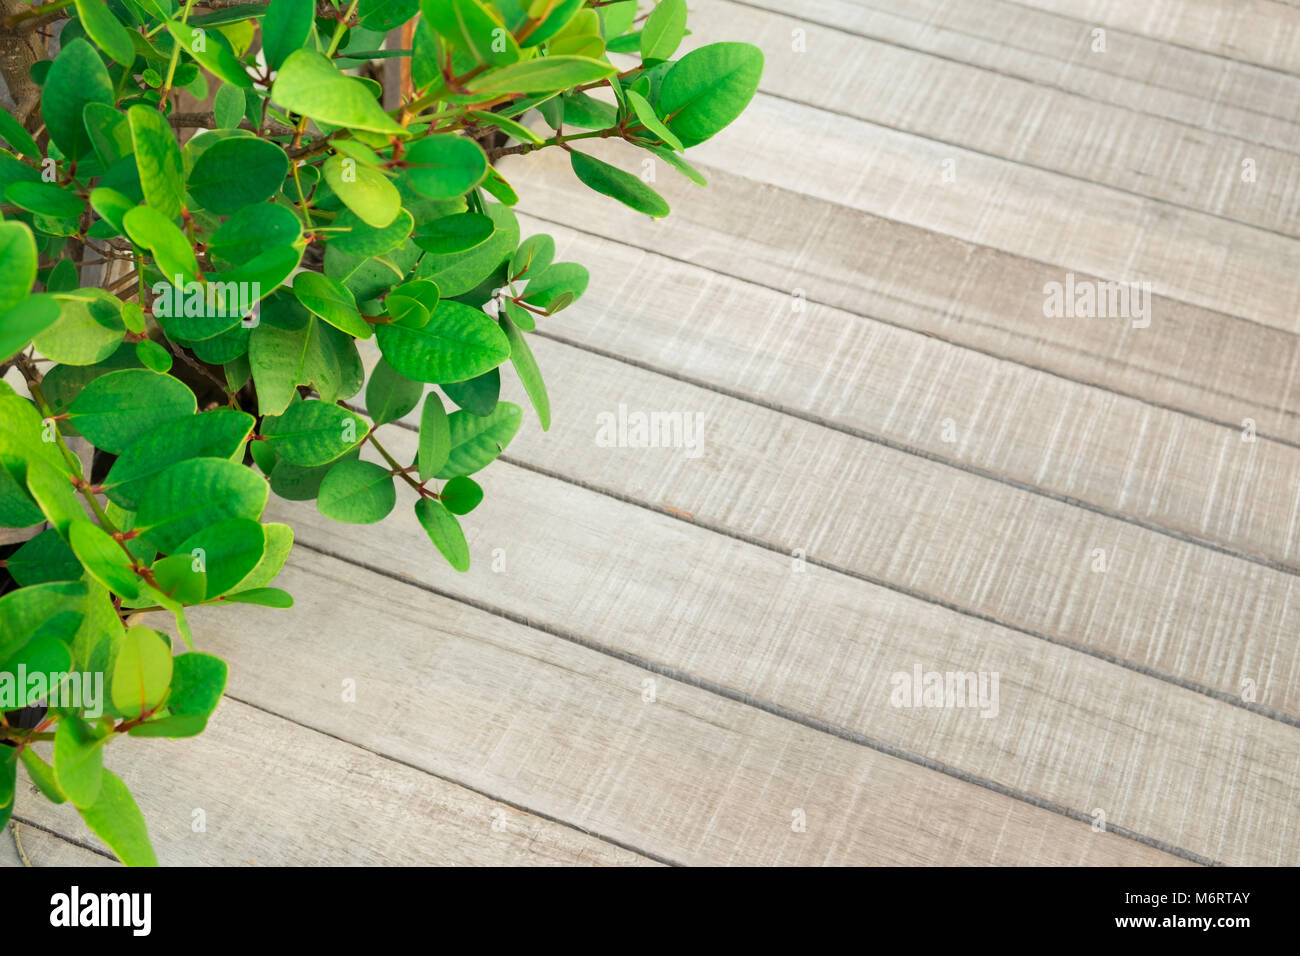 Feuille verte avec la texture, la planche en bois dans le jardin Banque D'Images